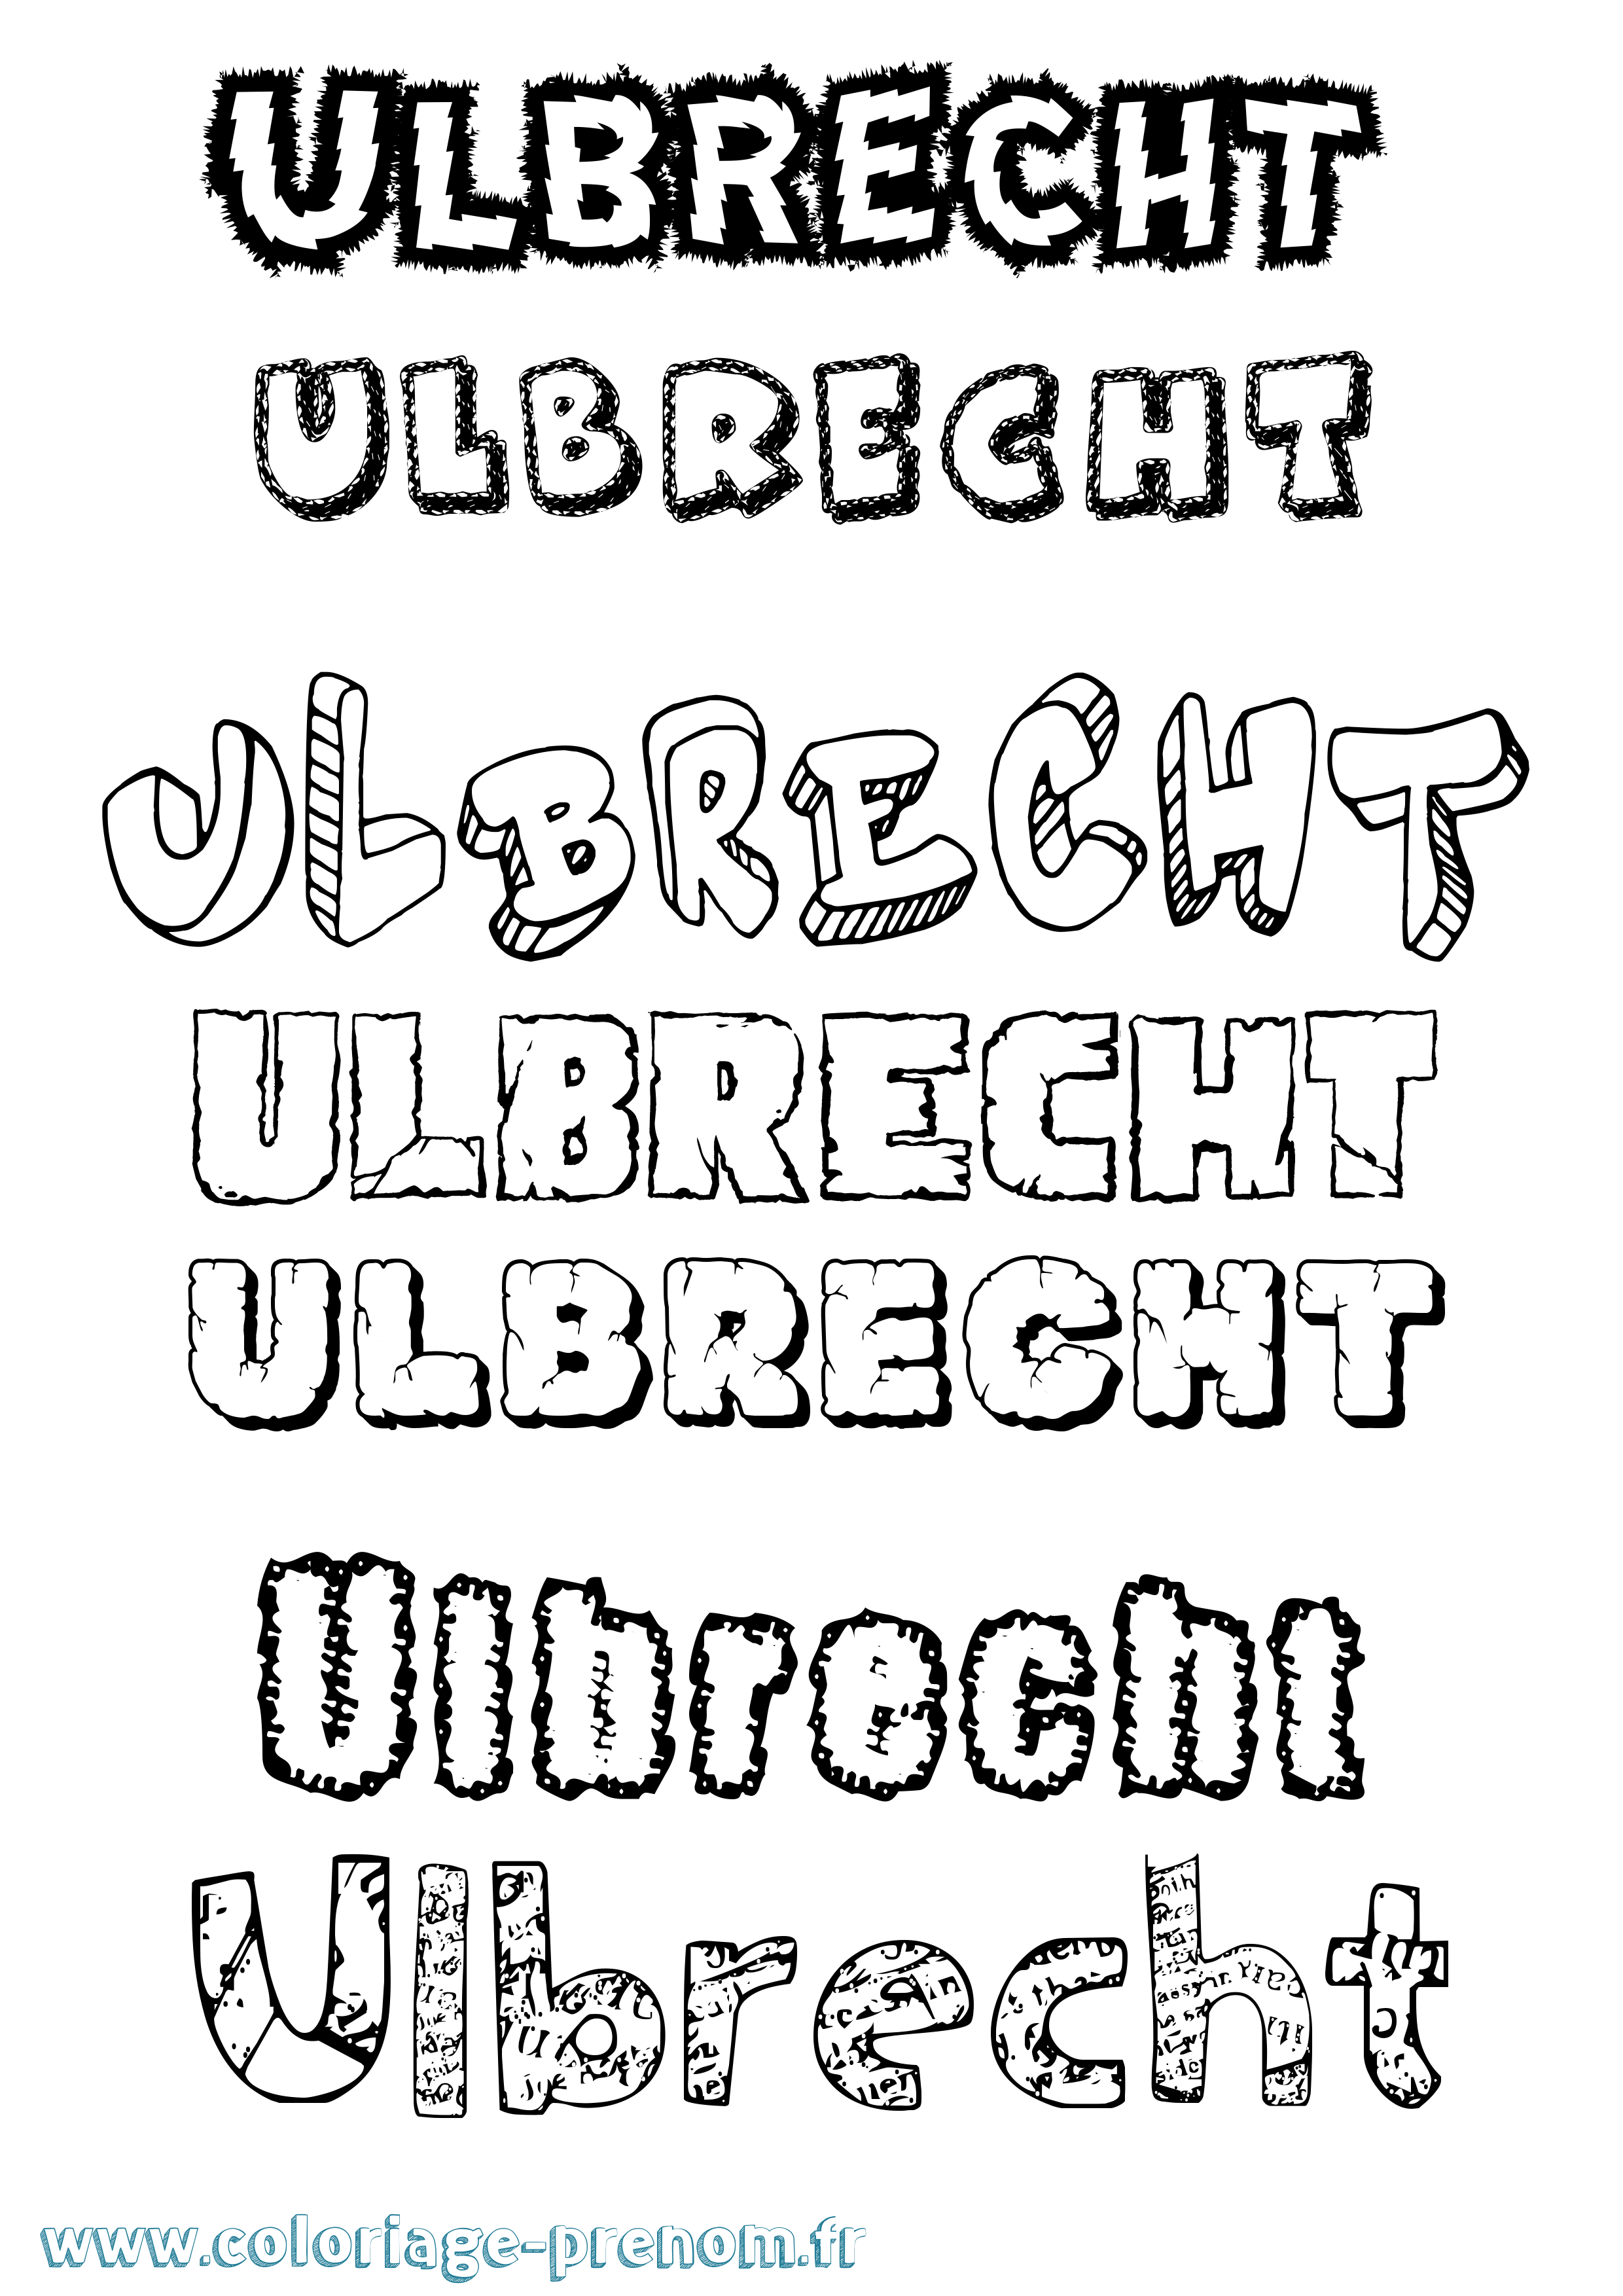 Coloriage prénom Ulbrecht Destructuré